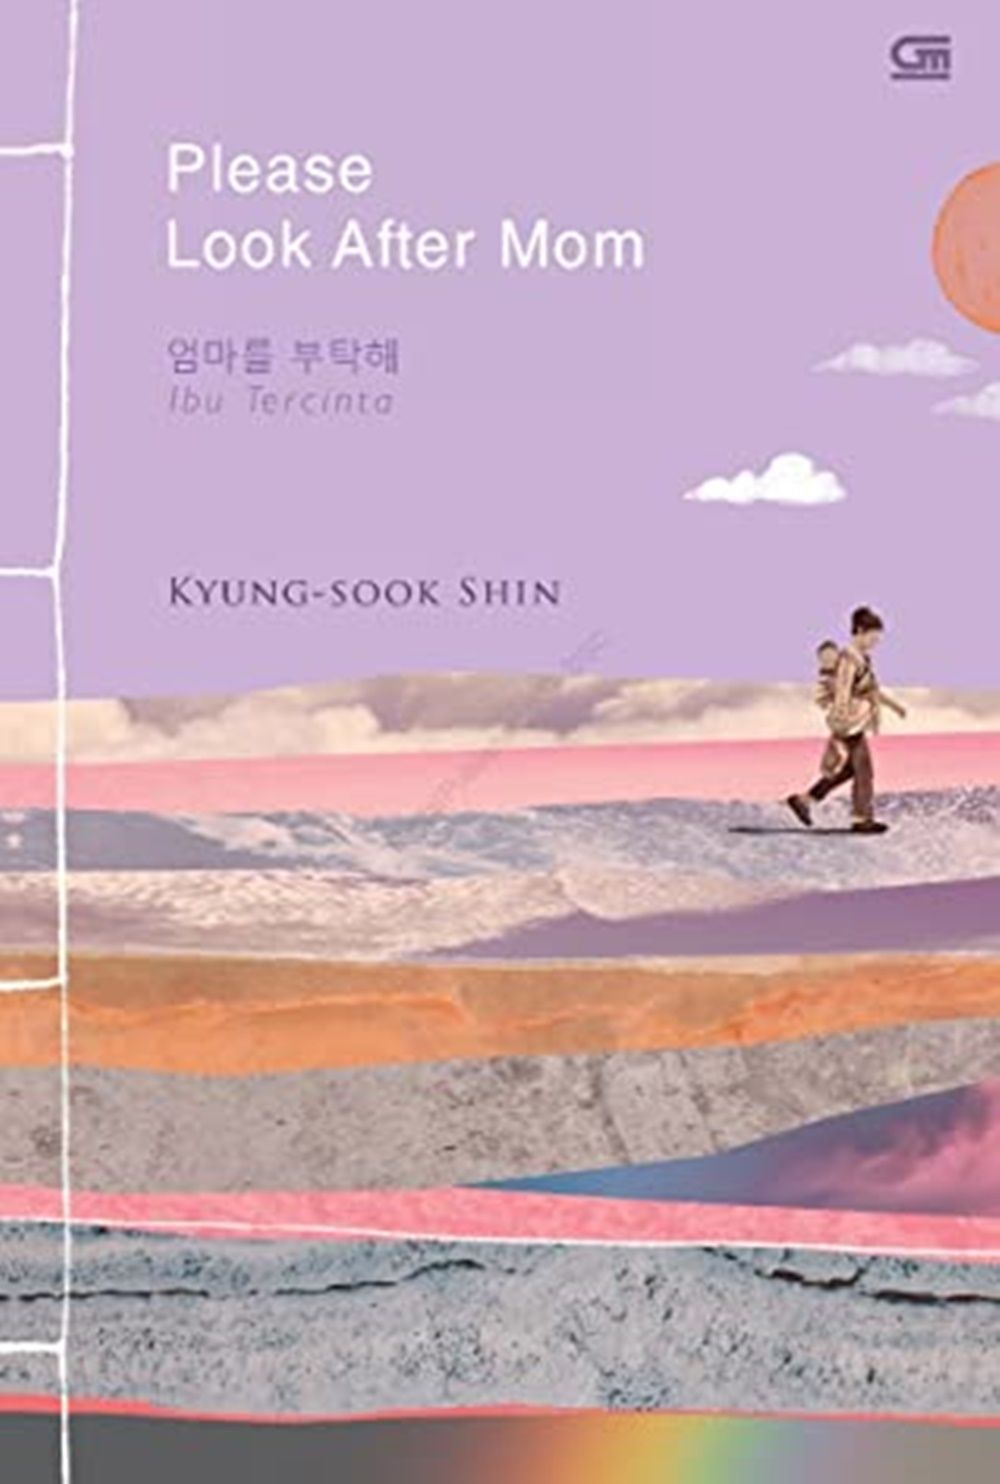 7 Buku Korea Terjemahan Indonesia yang Seru Buat Akhir Pekan